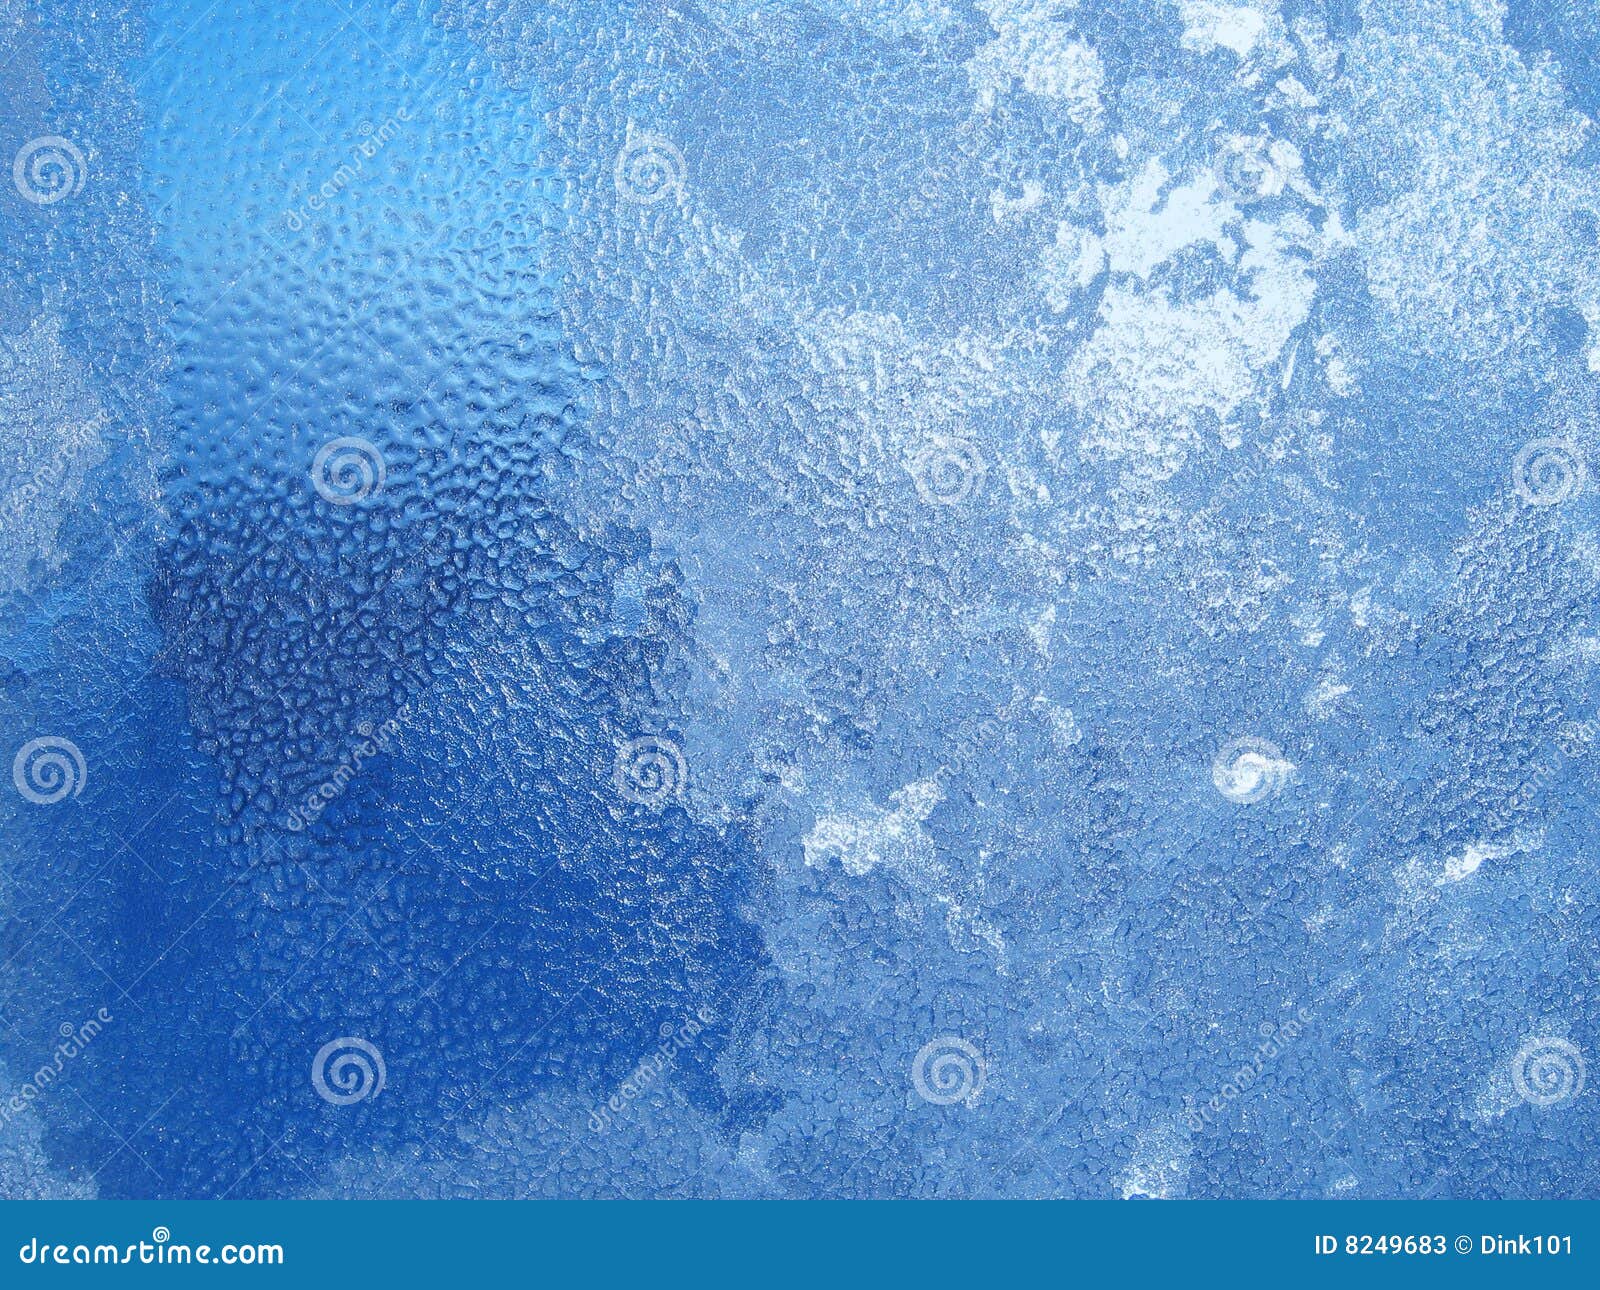 water drops end frost on window